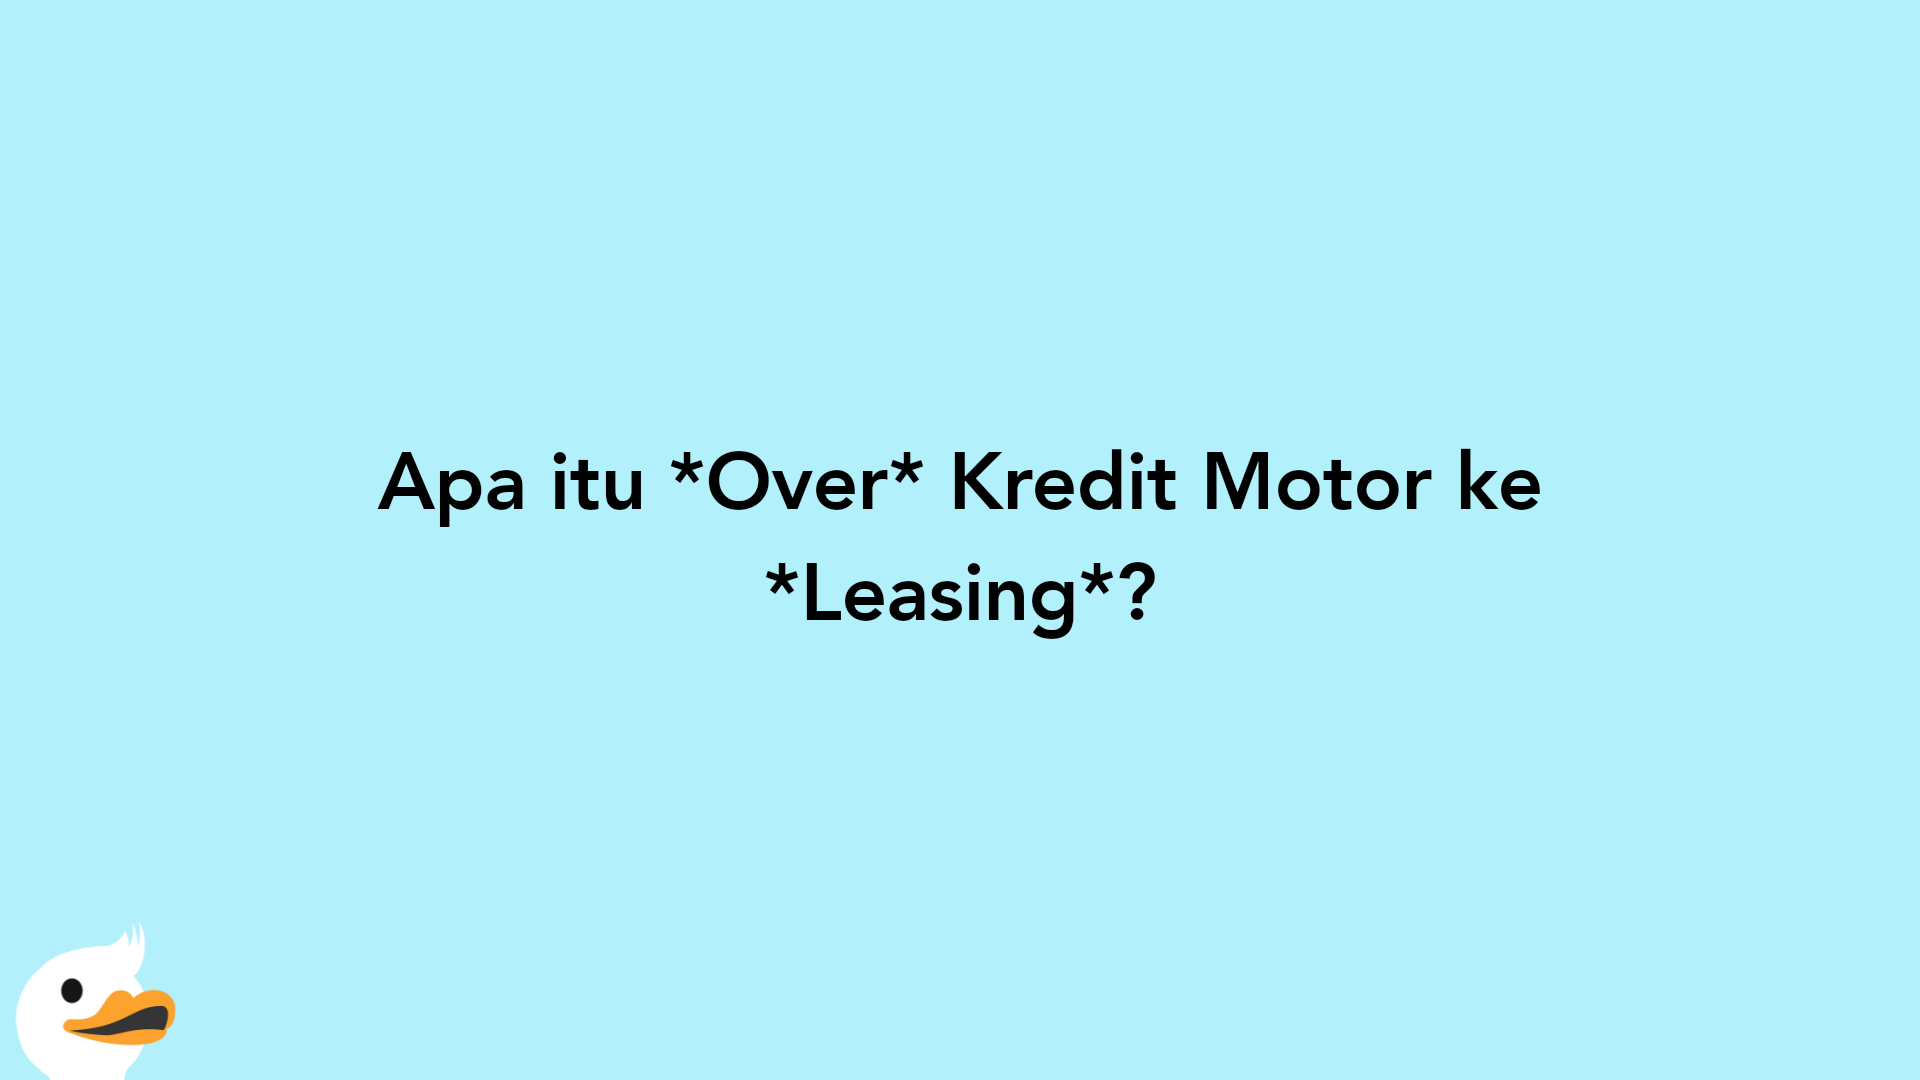 Apa itu Over Kredit Motor ke Leasing?